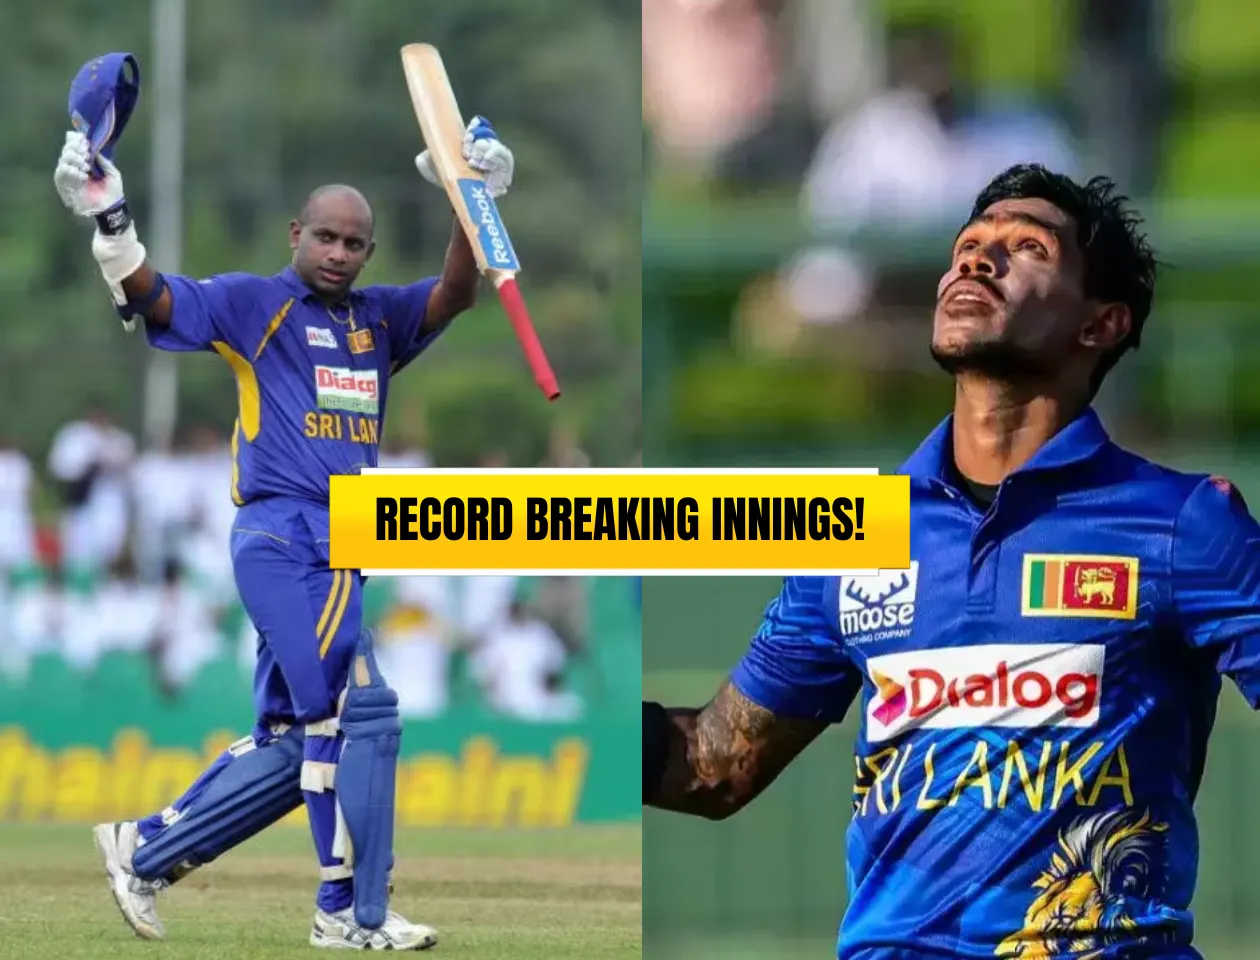 Highest score for Sri Lanka 